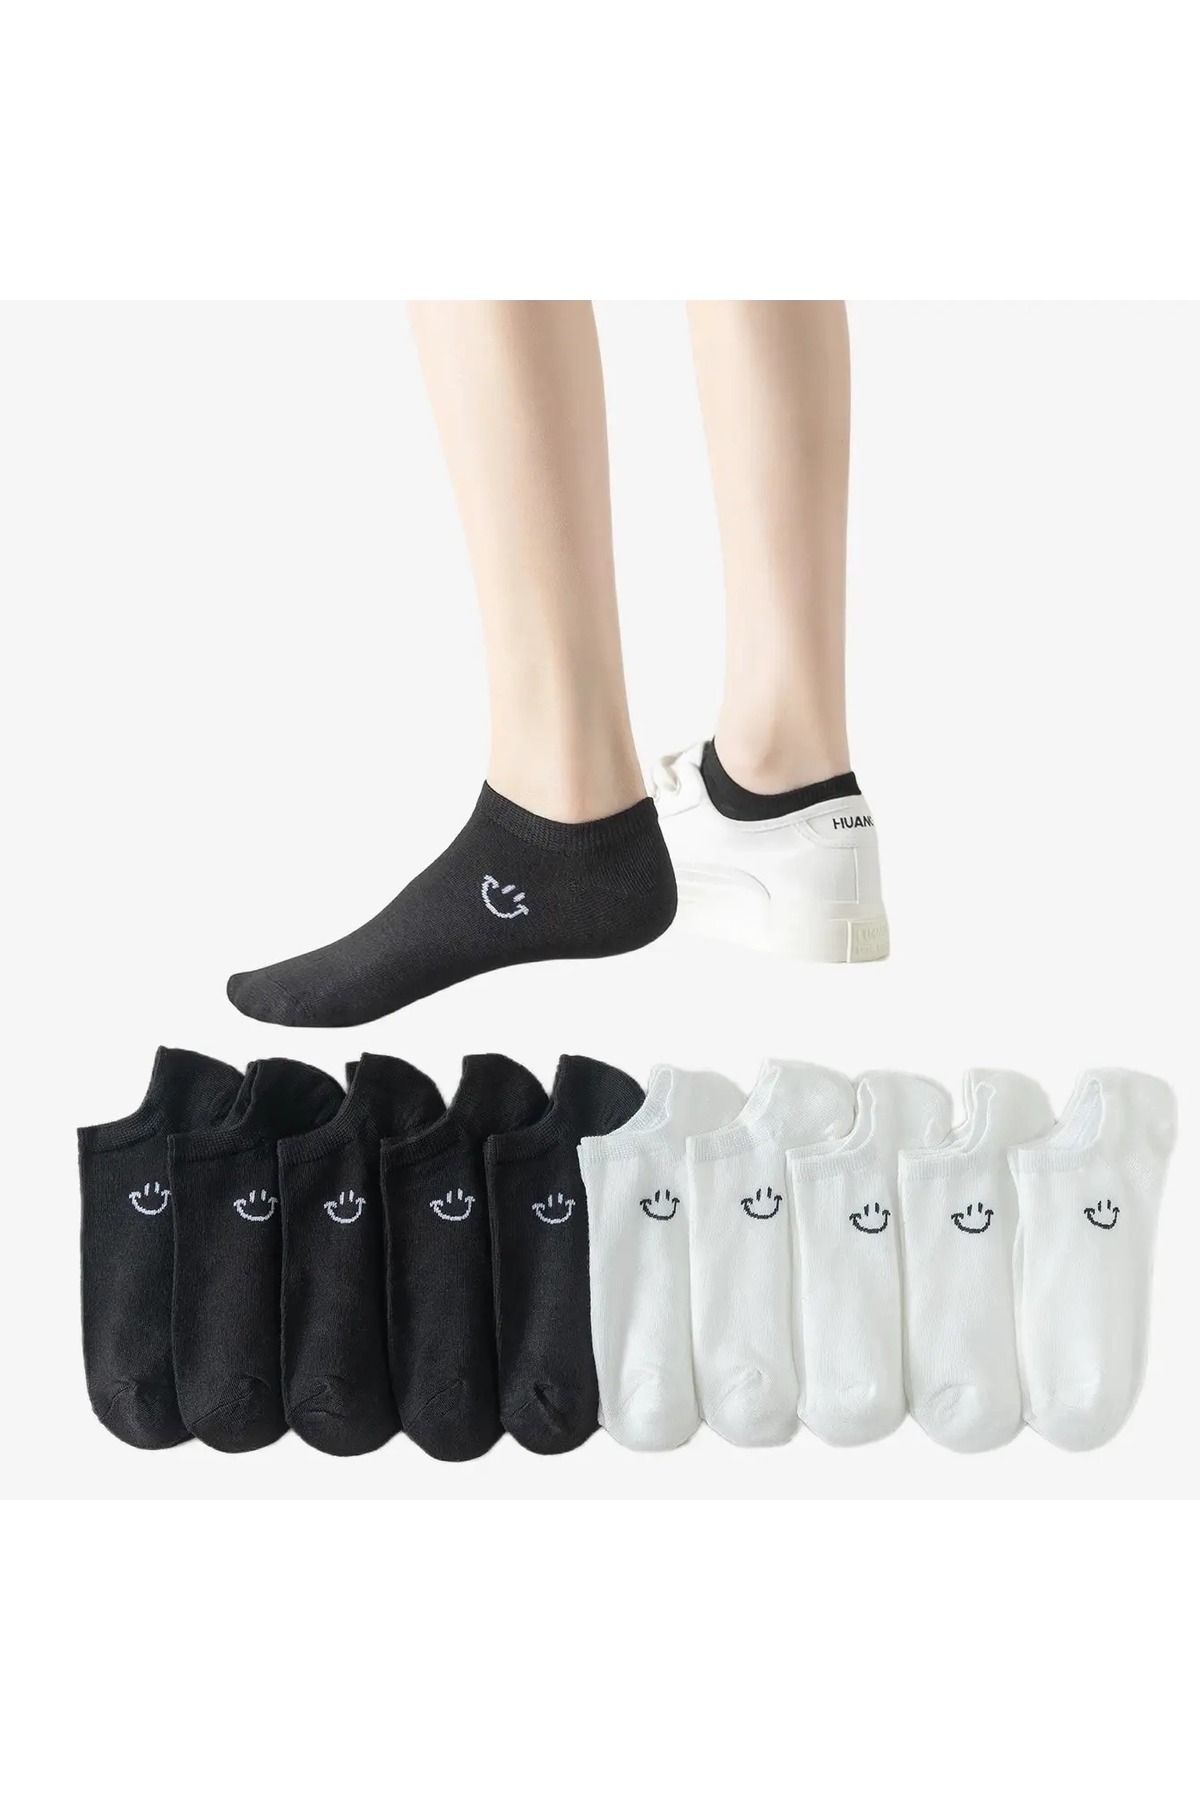 çorapmanya 10 Çift Koton Siyah Beyaz Gülen Yüz Kadın Patik Çorap